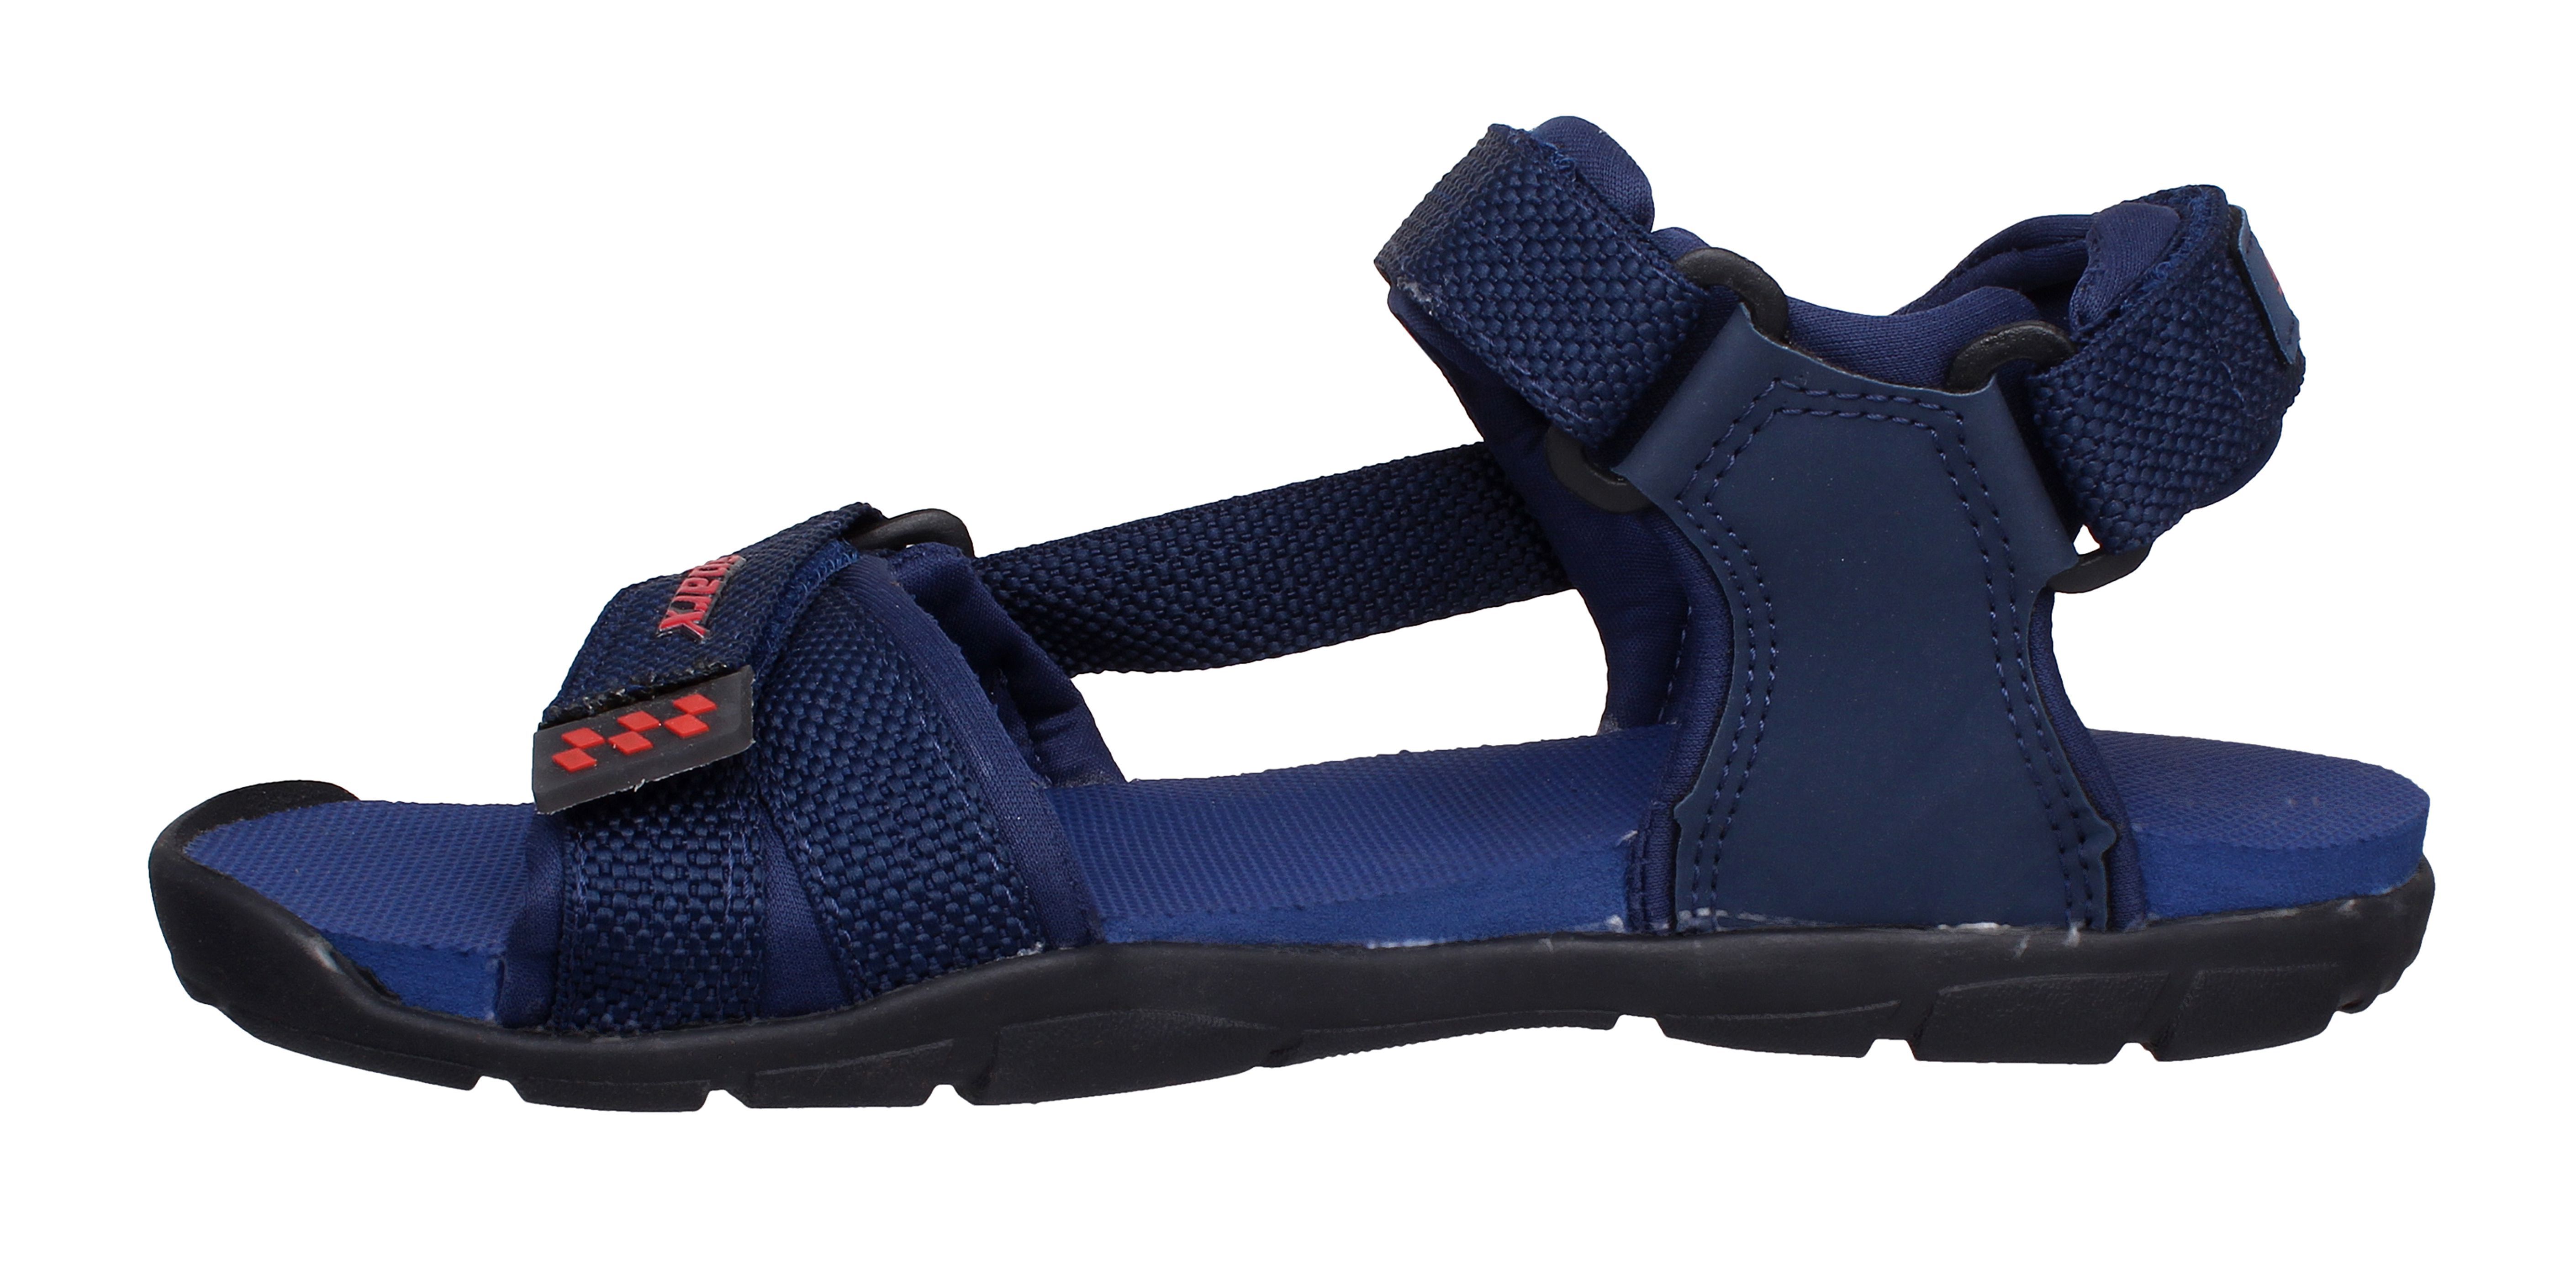 Sparx Navy Floater Sandals - Buy Sparx Navy Floater Sandals Online at ...